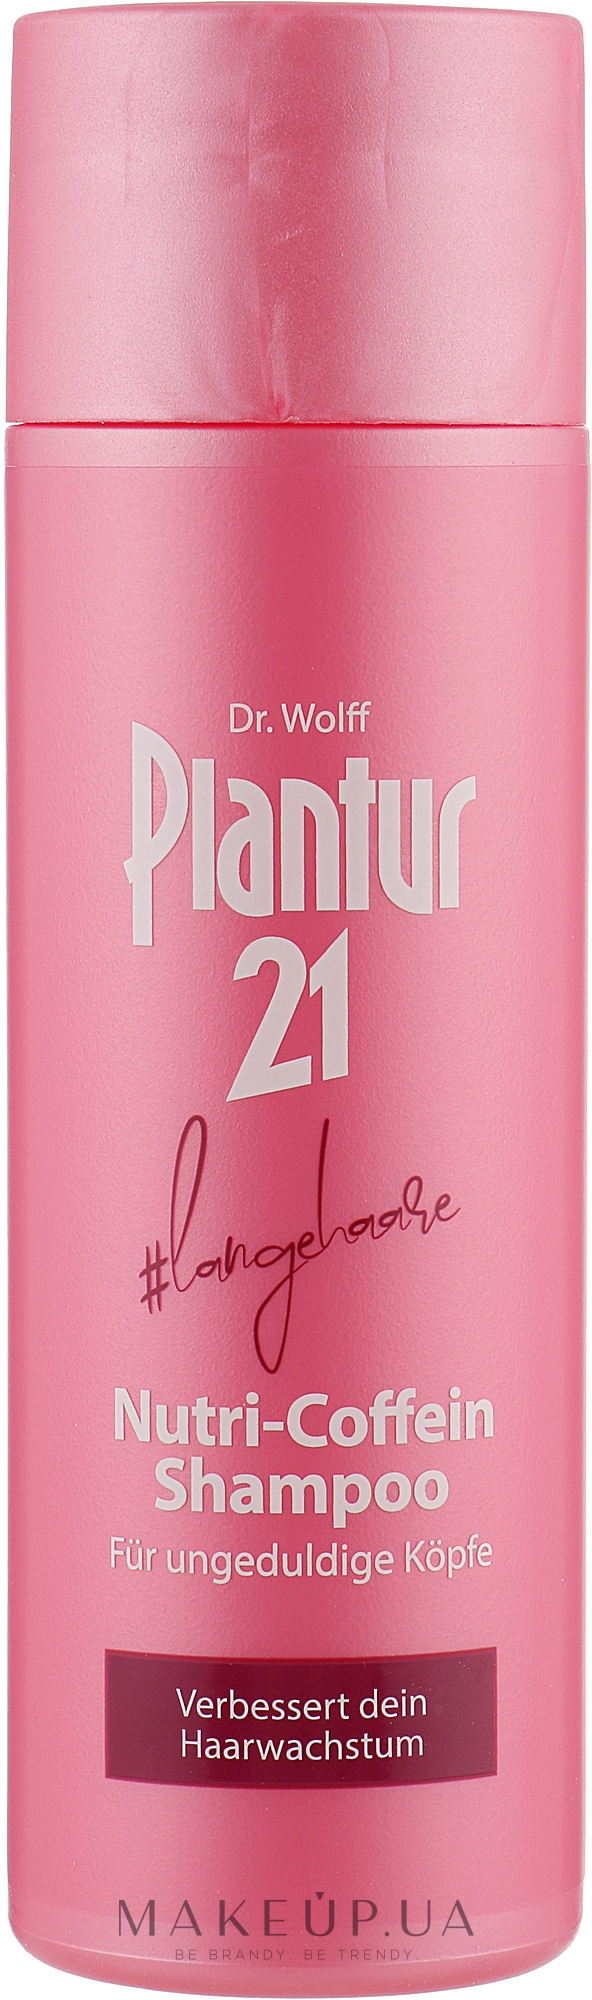 Нутрі-кофеїновий шампунь для довгого волосся - Plantur 21 #longhair Nutri-Caffeine-Shampoo — фото 200ml